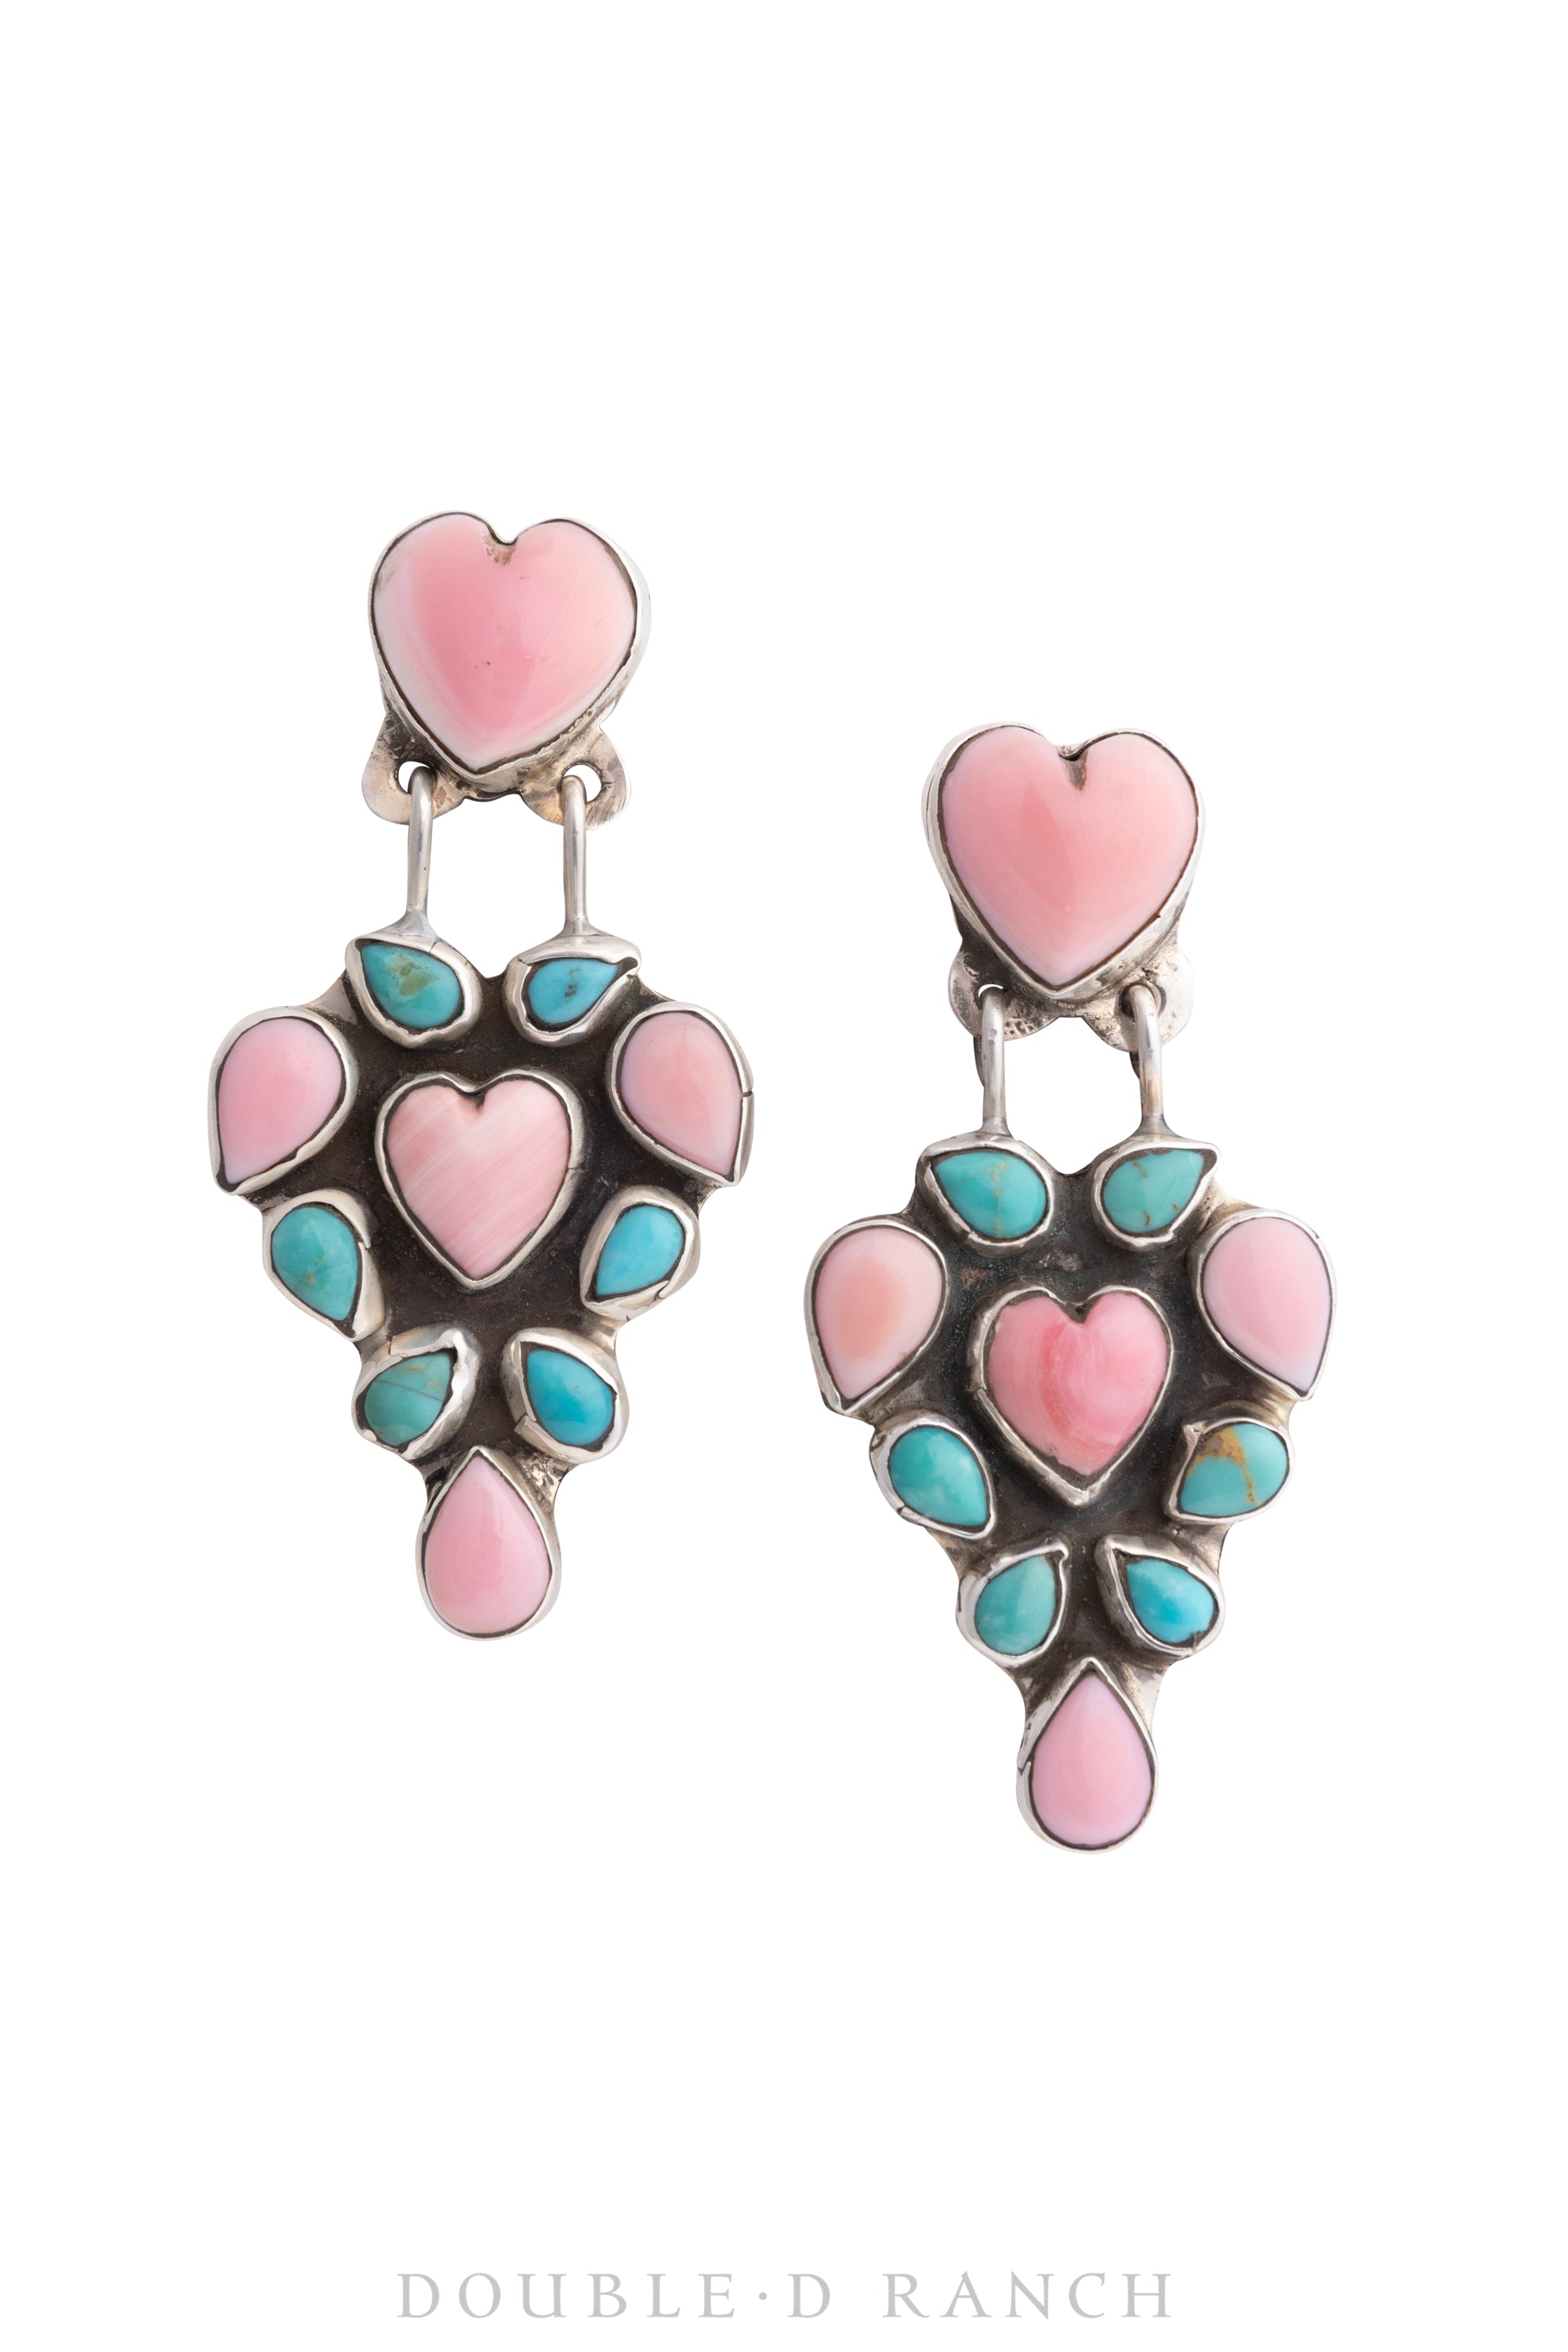 Earrings, Oscar Betz, Chandelier, Heart, Turquoise, Pink Opal, Hallmark, Contemporary, 1594